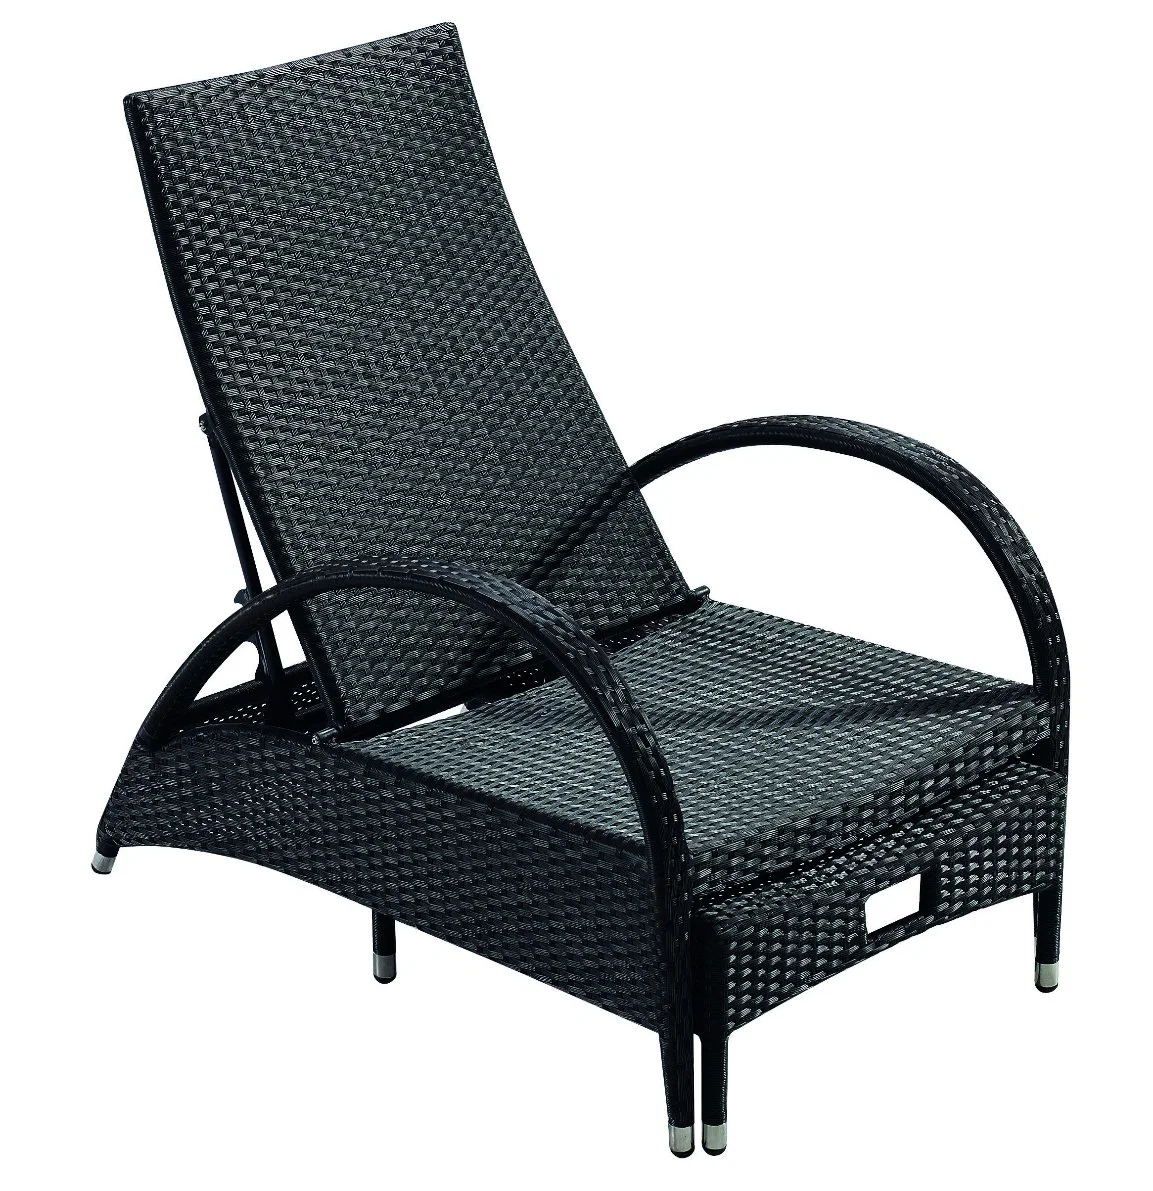 Wicker Recline Sun Lounger Patio Garden Furniture Lounger Sets